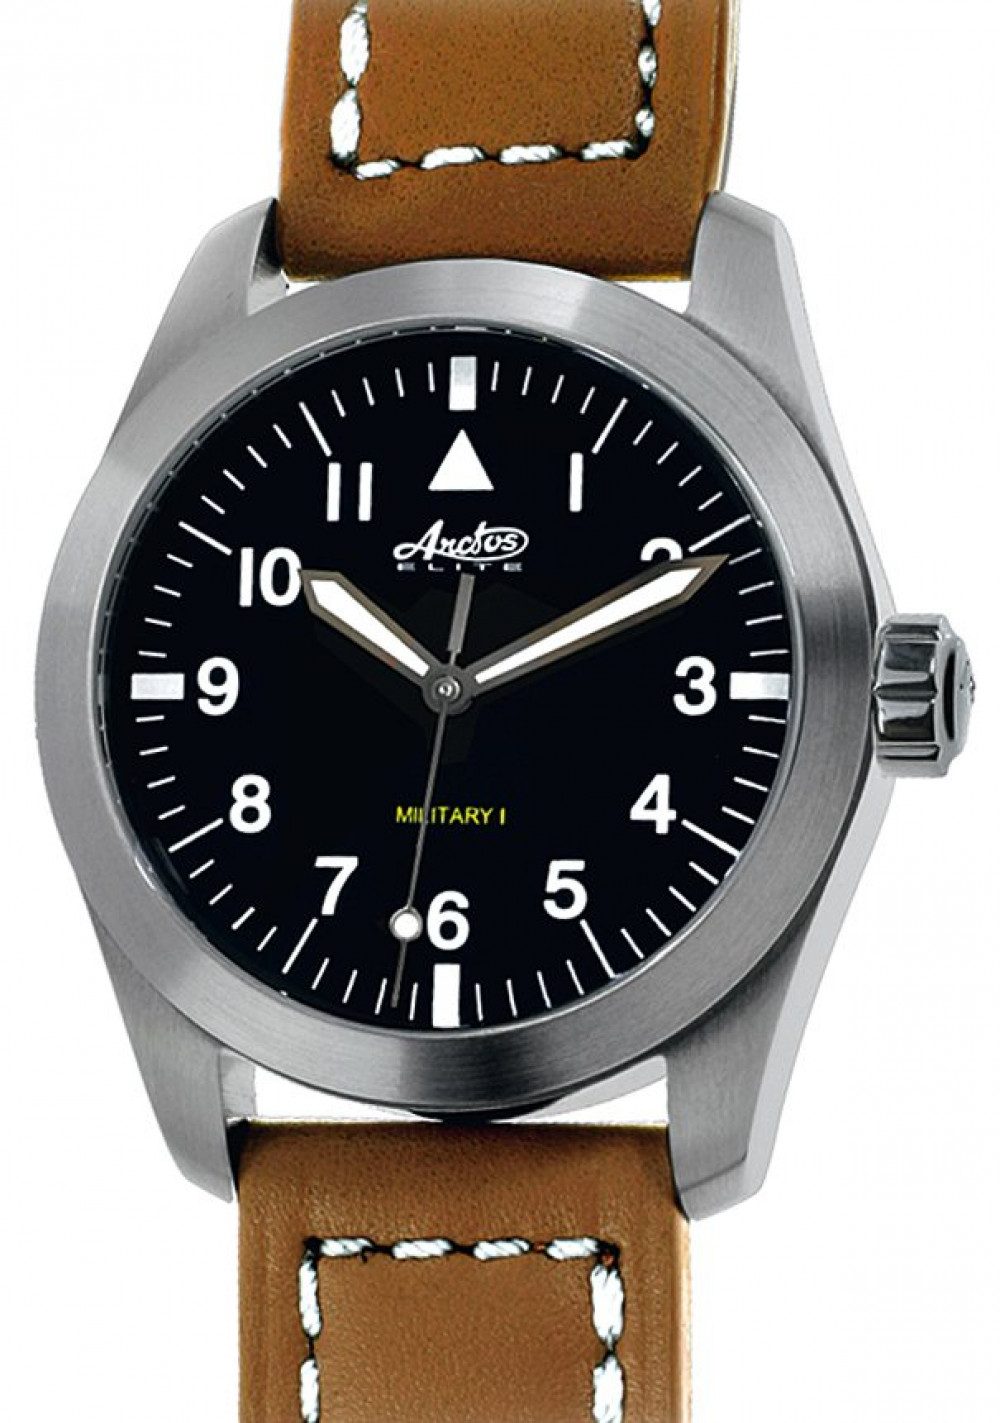 Zegarek firmy Arctos, model Military I